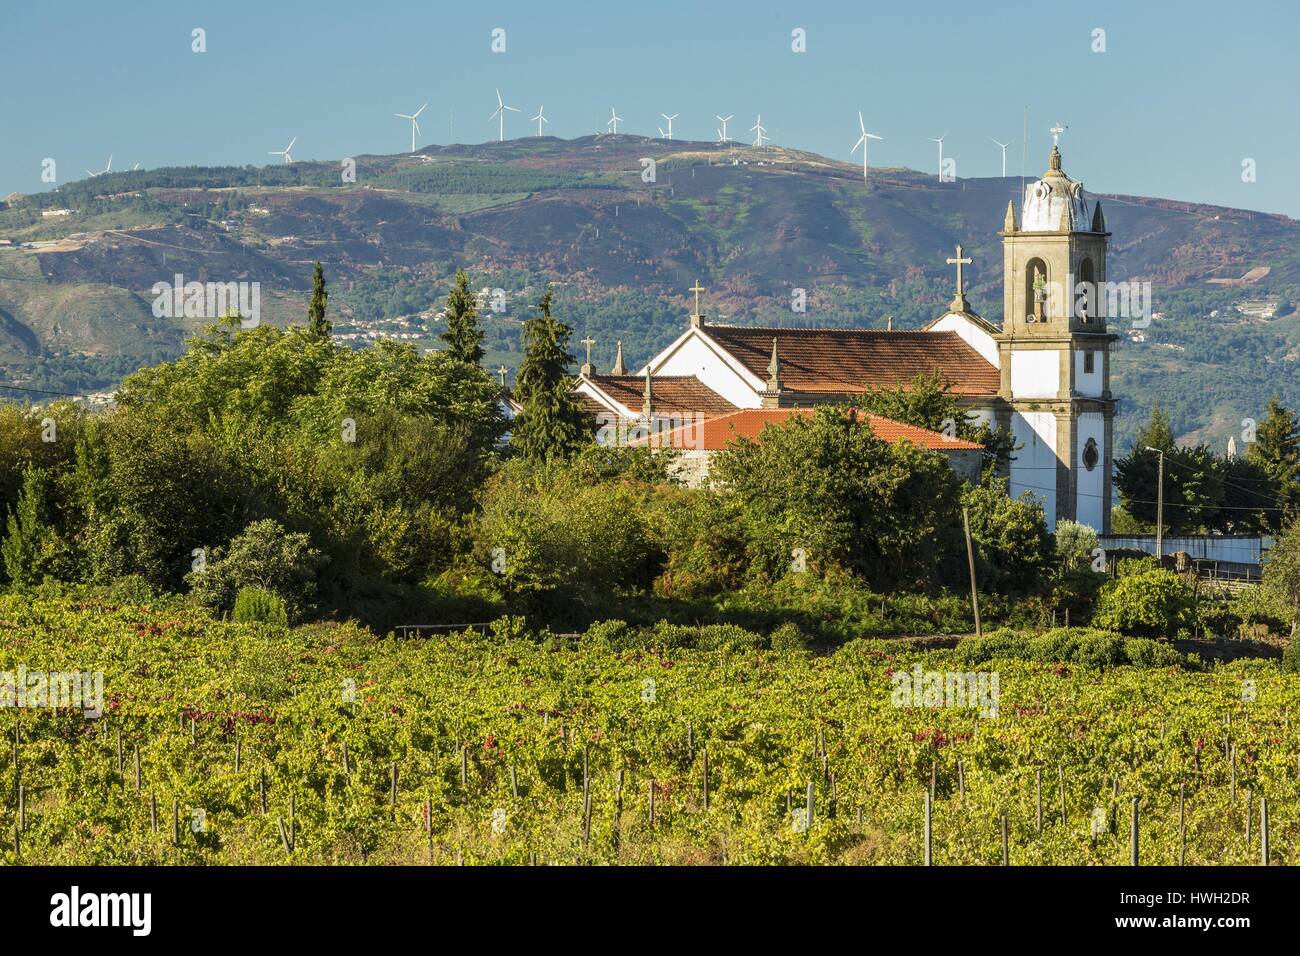 Le Portugal, la Vallée du Douro et son vignoble classé Patrimoine Mondial de l'UNESCO, Poiares, vue d'un parc éolien Banque D'Images